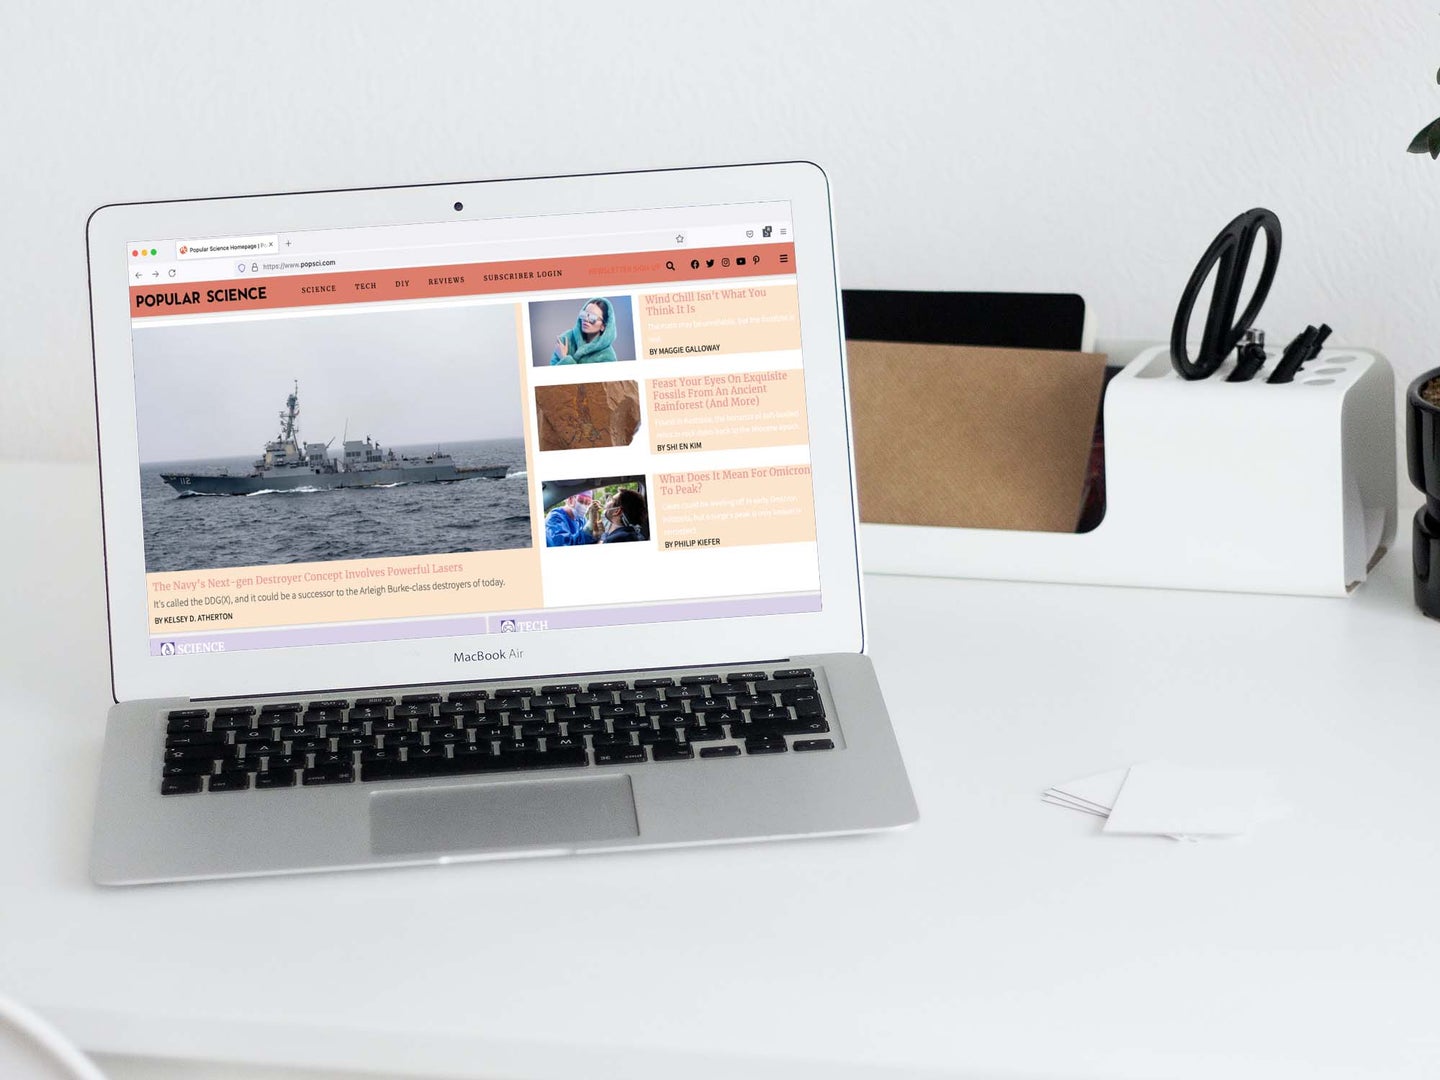 MacBook Air op wit bureau met popsci-website